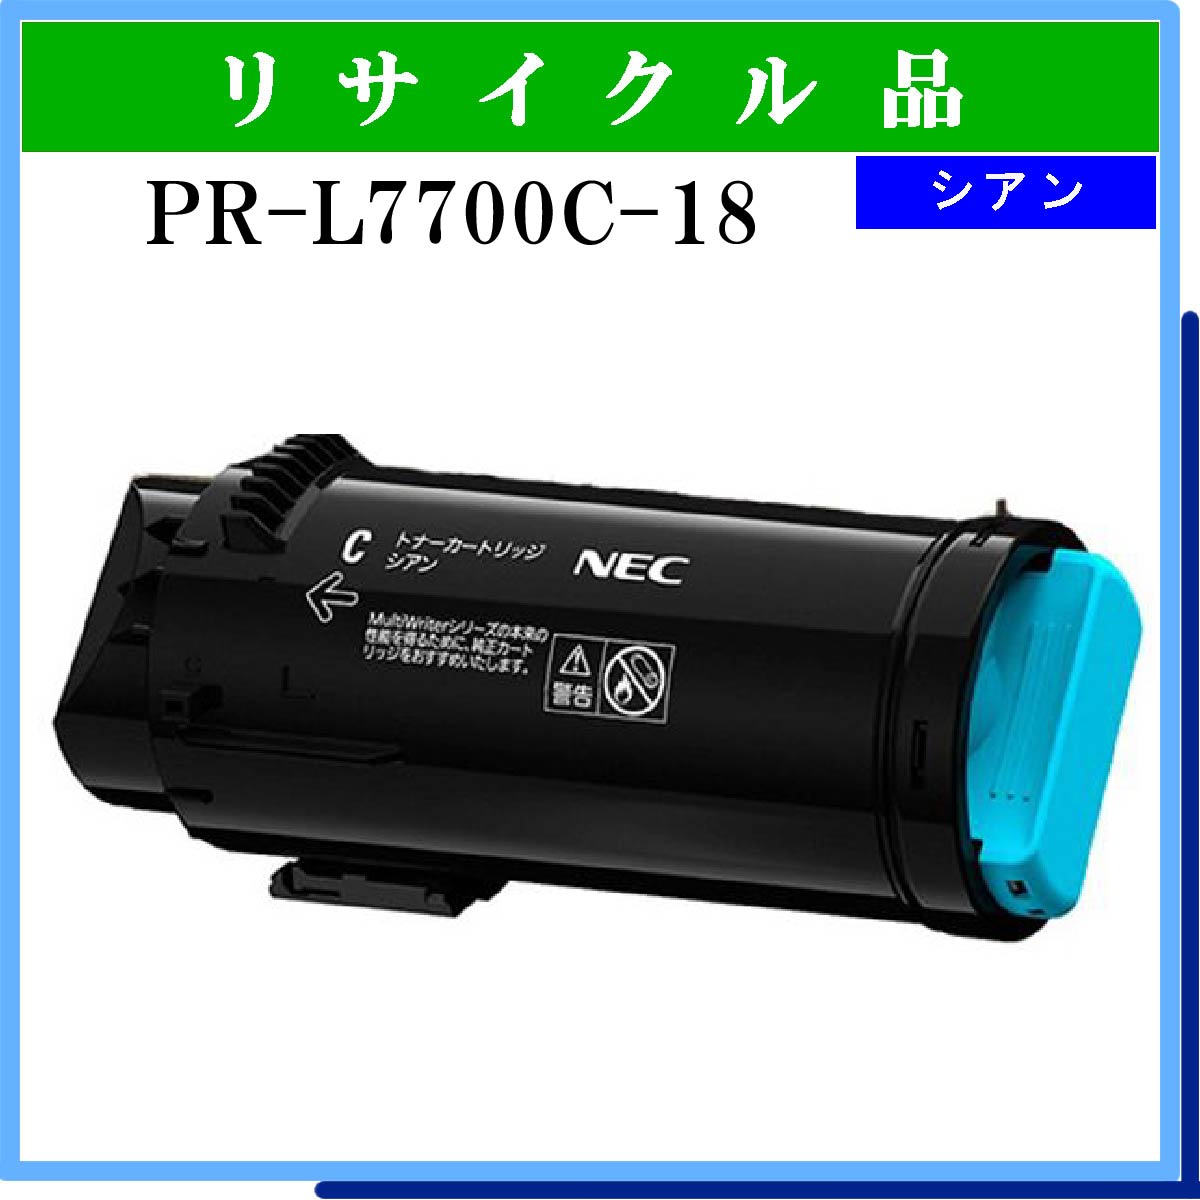 PR-L7700C-18